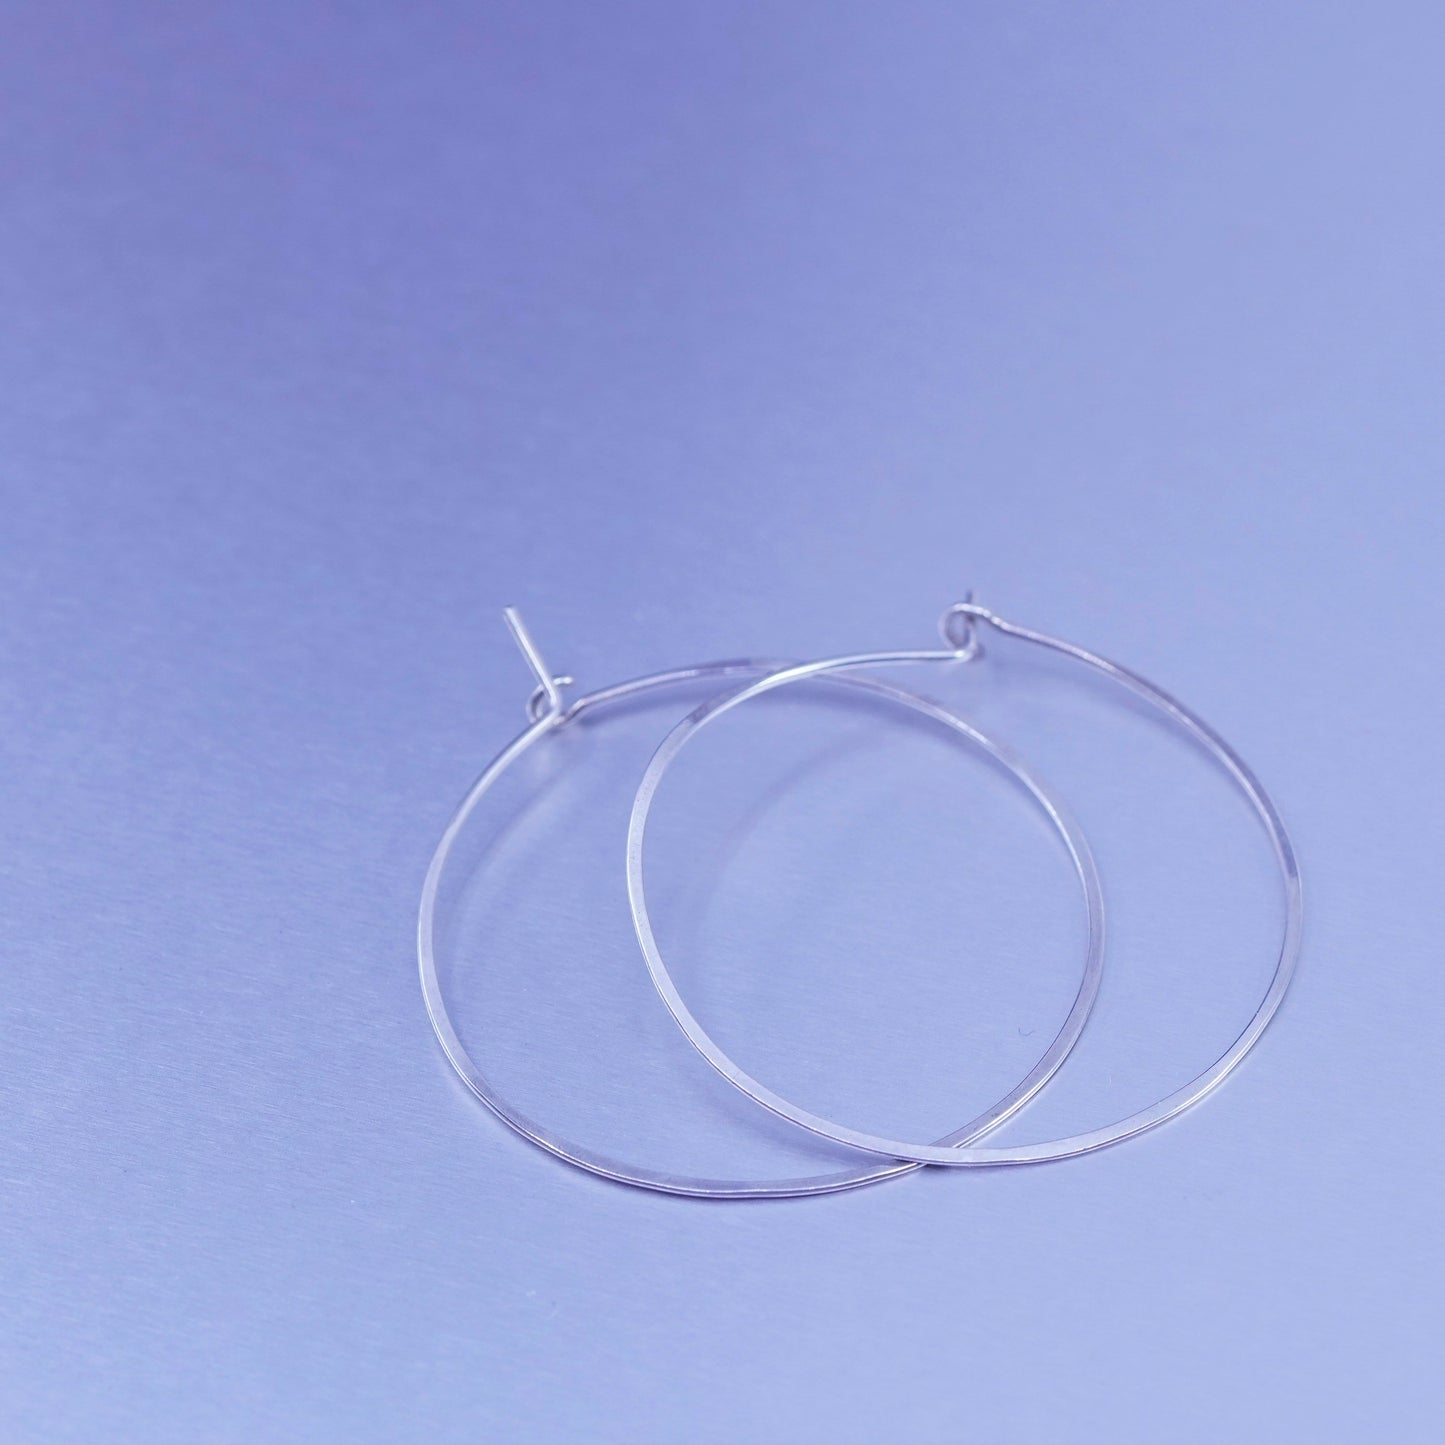 1.5”, vintage Sterling silver handmade earrings, 925 simple hoops